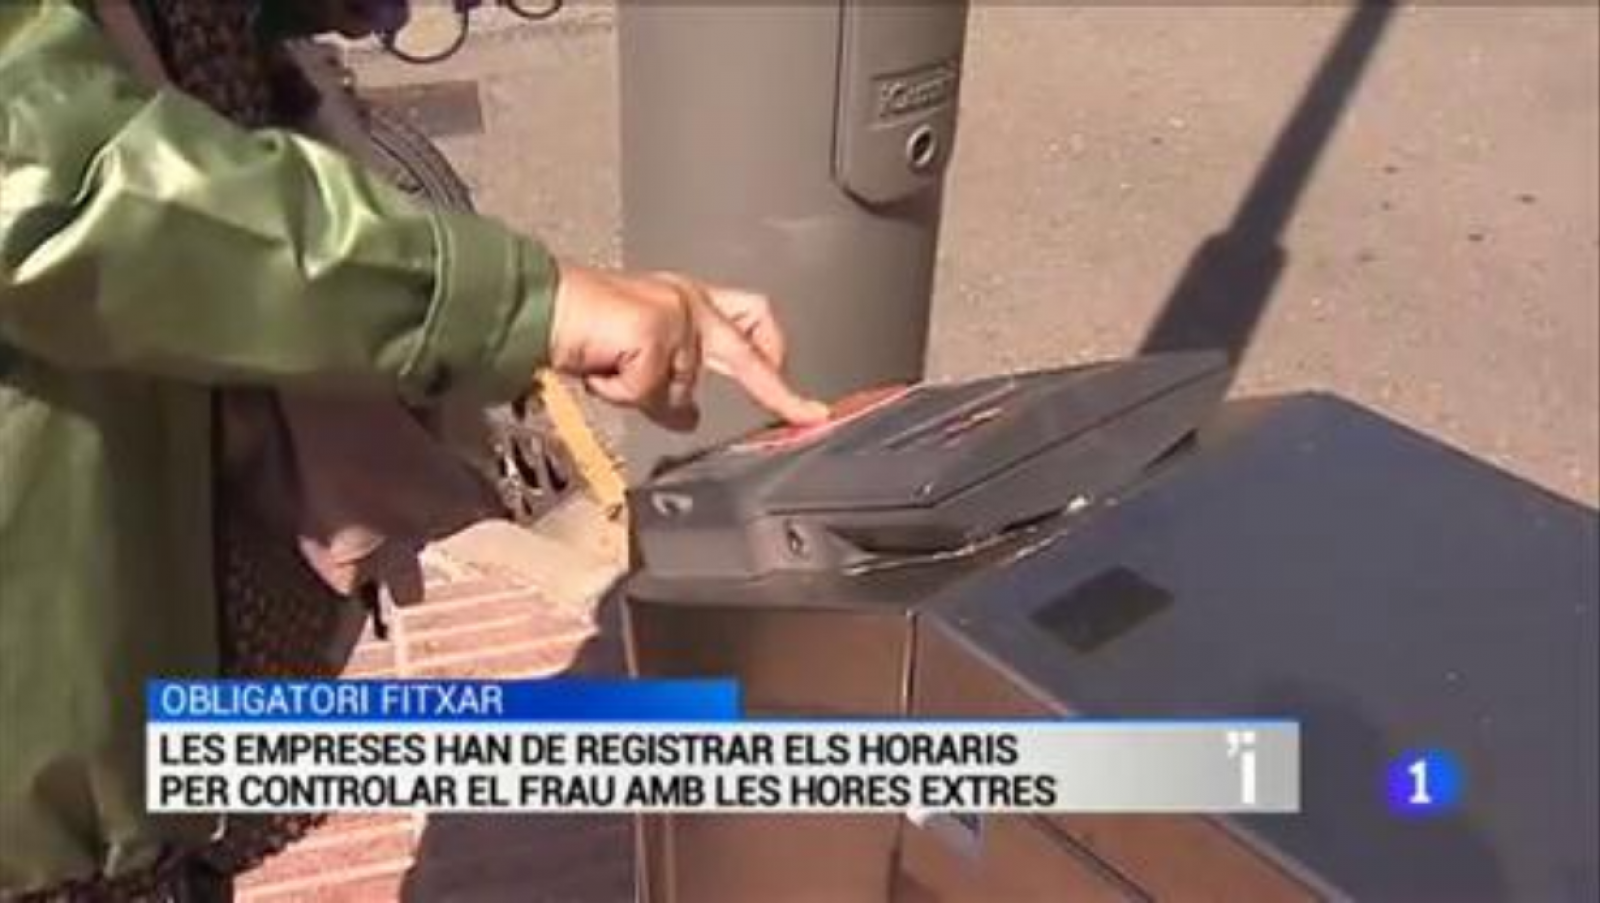 L'Informatiu | Sumari de les notícies del 13/05/2019 - RTVE.es